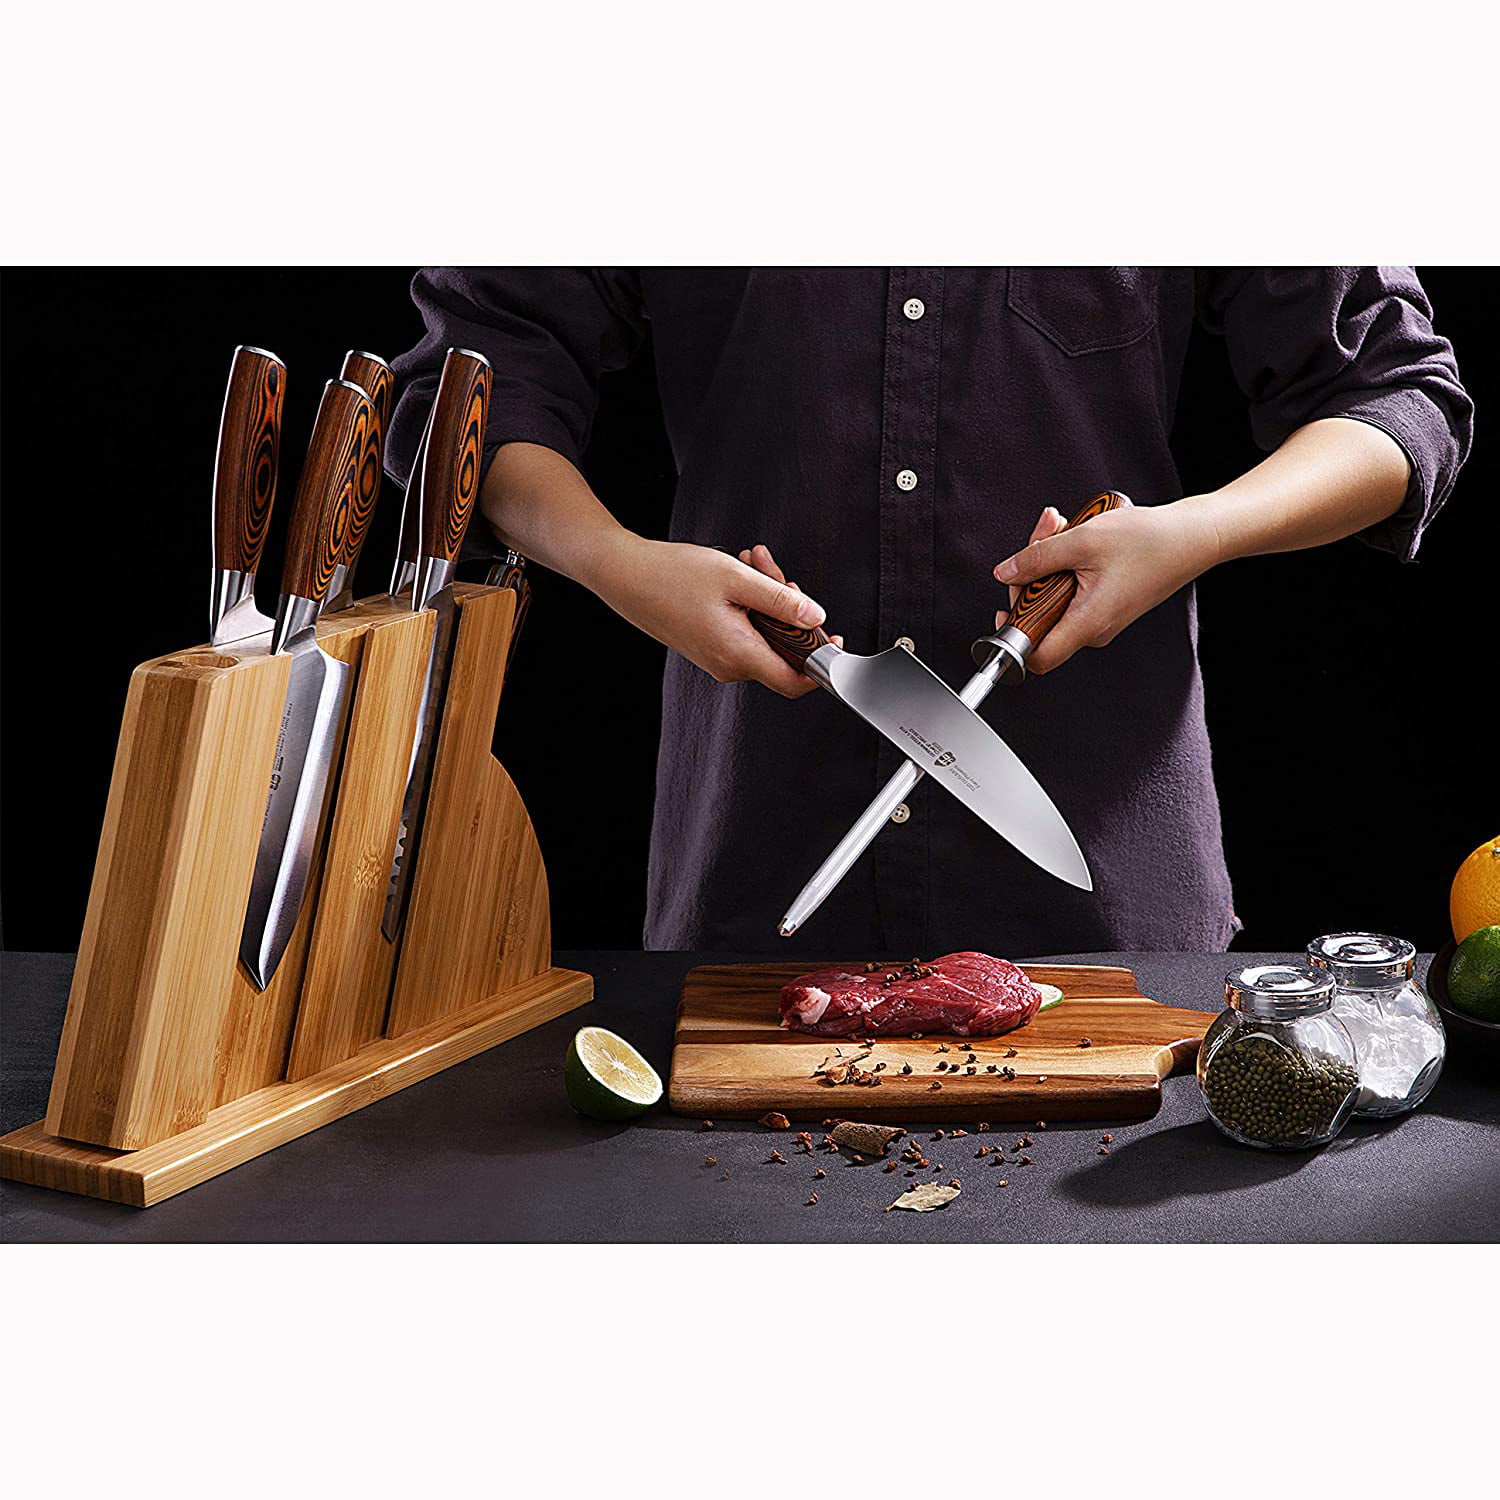 FULLHI Knife Set 13pcs Japanese Knife Set 7pcs Chef's Knives Pakka